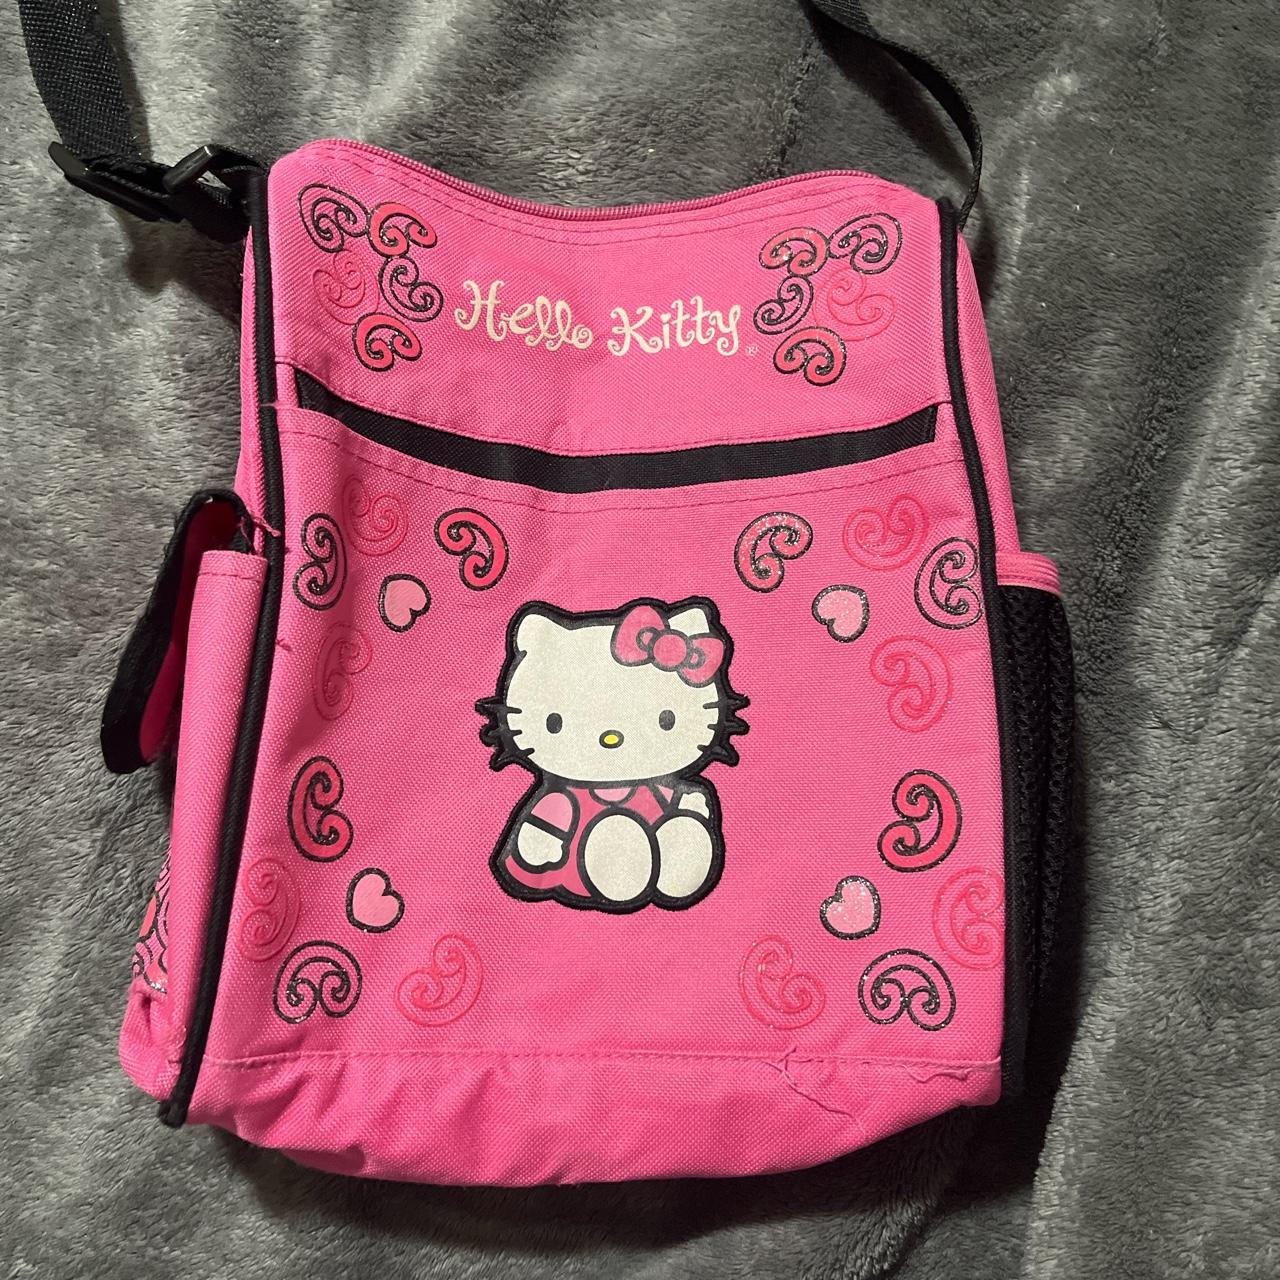 Pink Hello Kitty Side Bag/Shoulder Bag -It has... - Depop